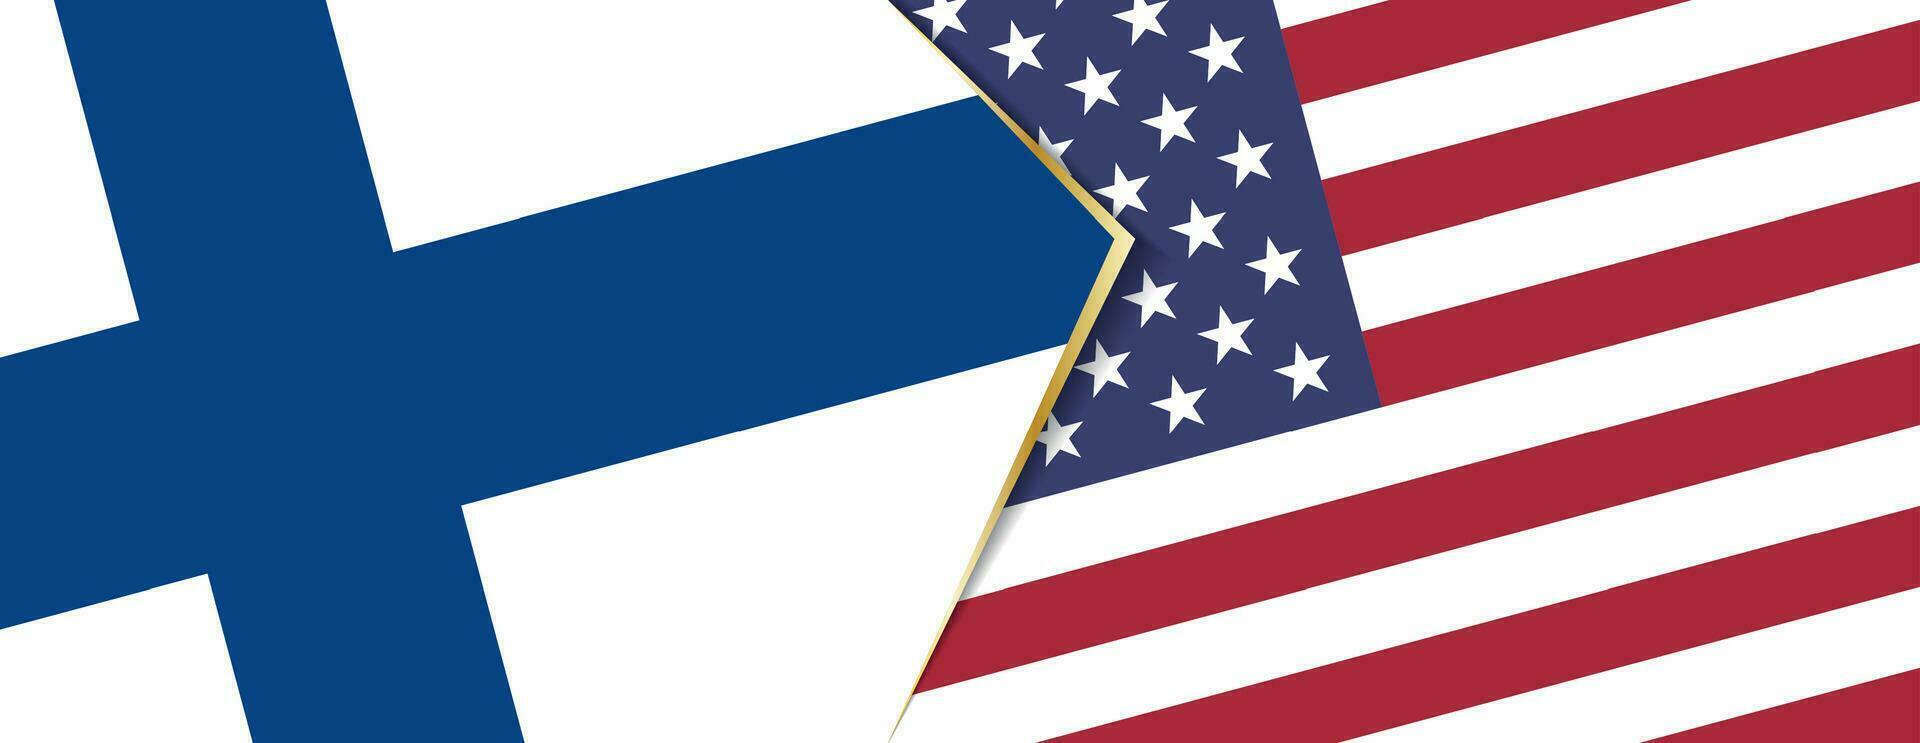 Finlândia e EUA bandeiras, dois vetor bandeiras.